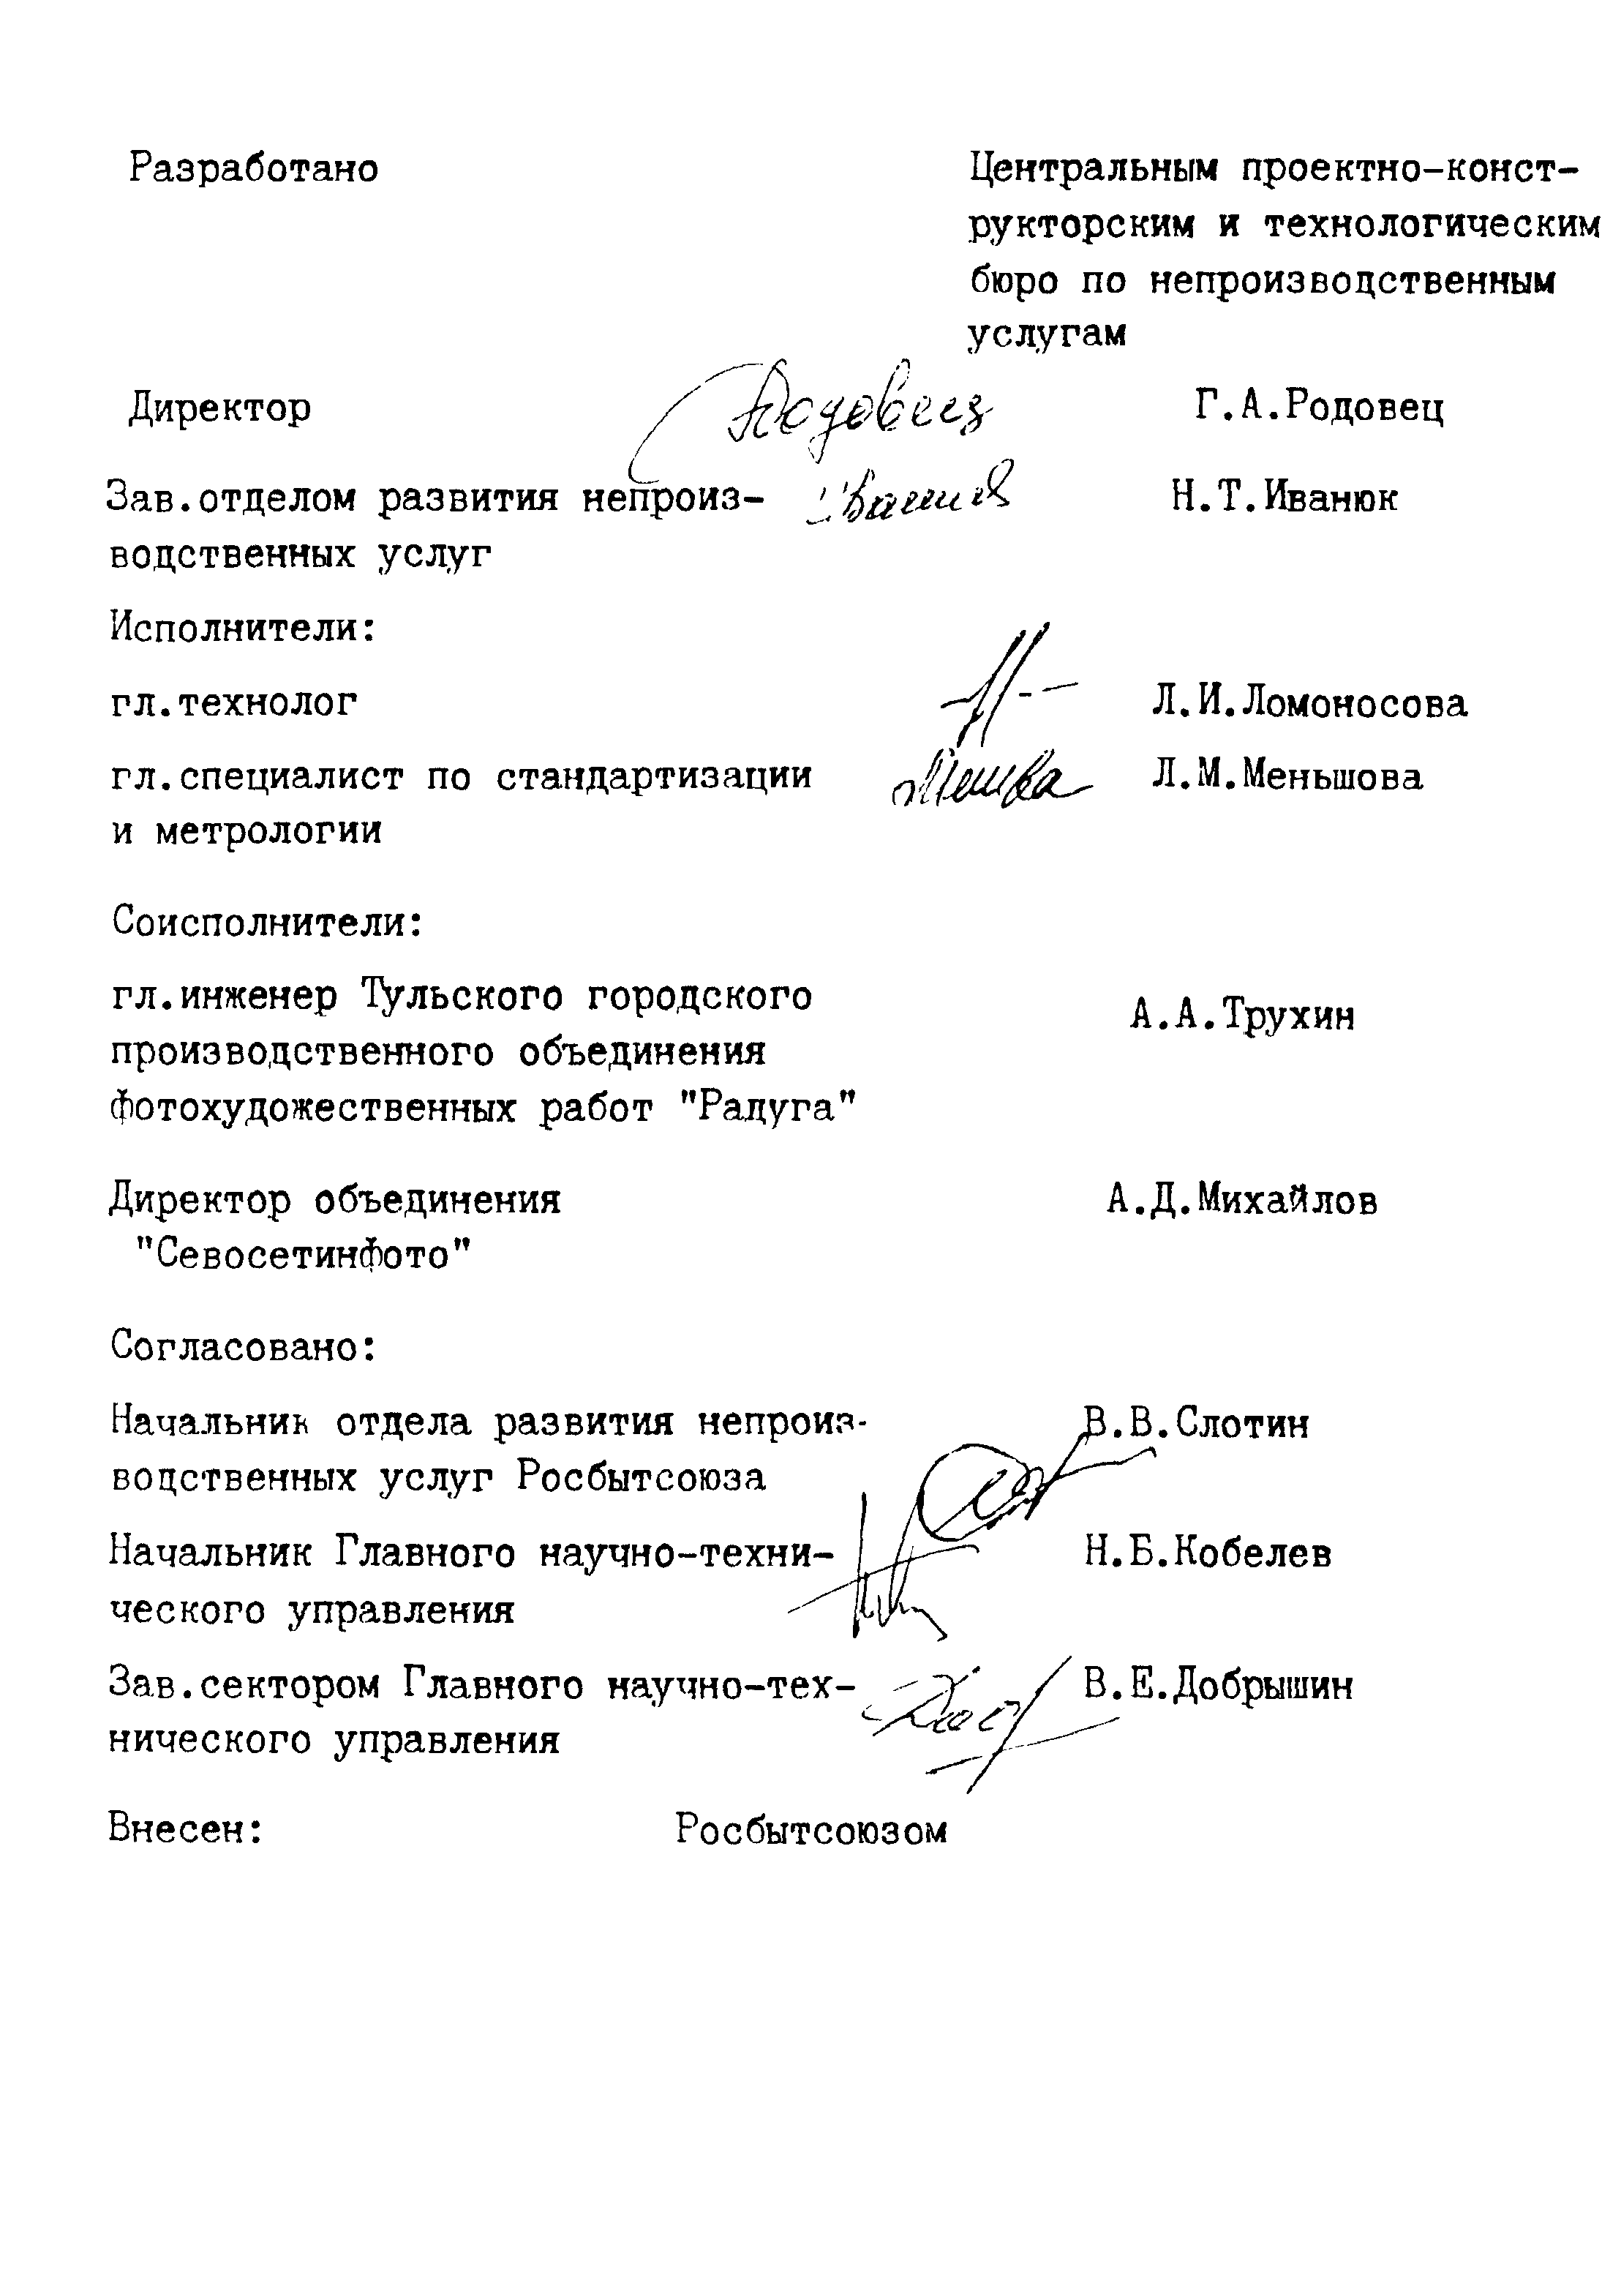 РСТ РСФСР 789-91